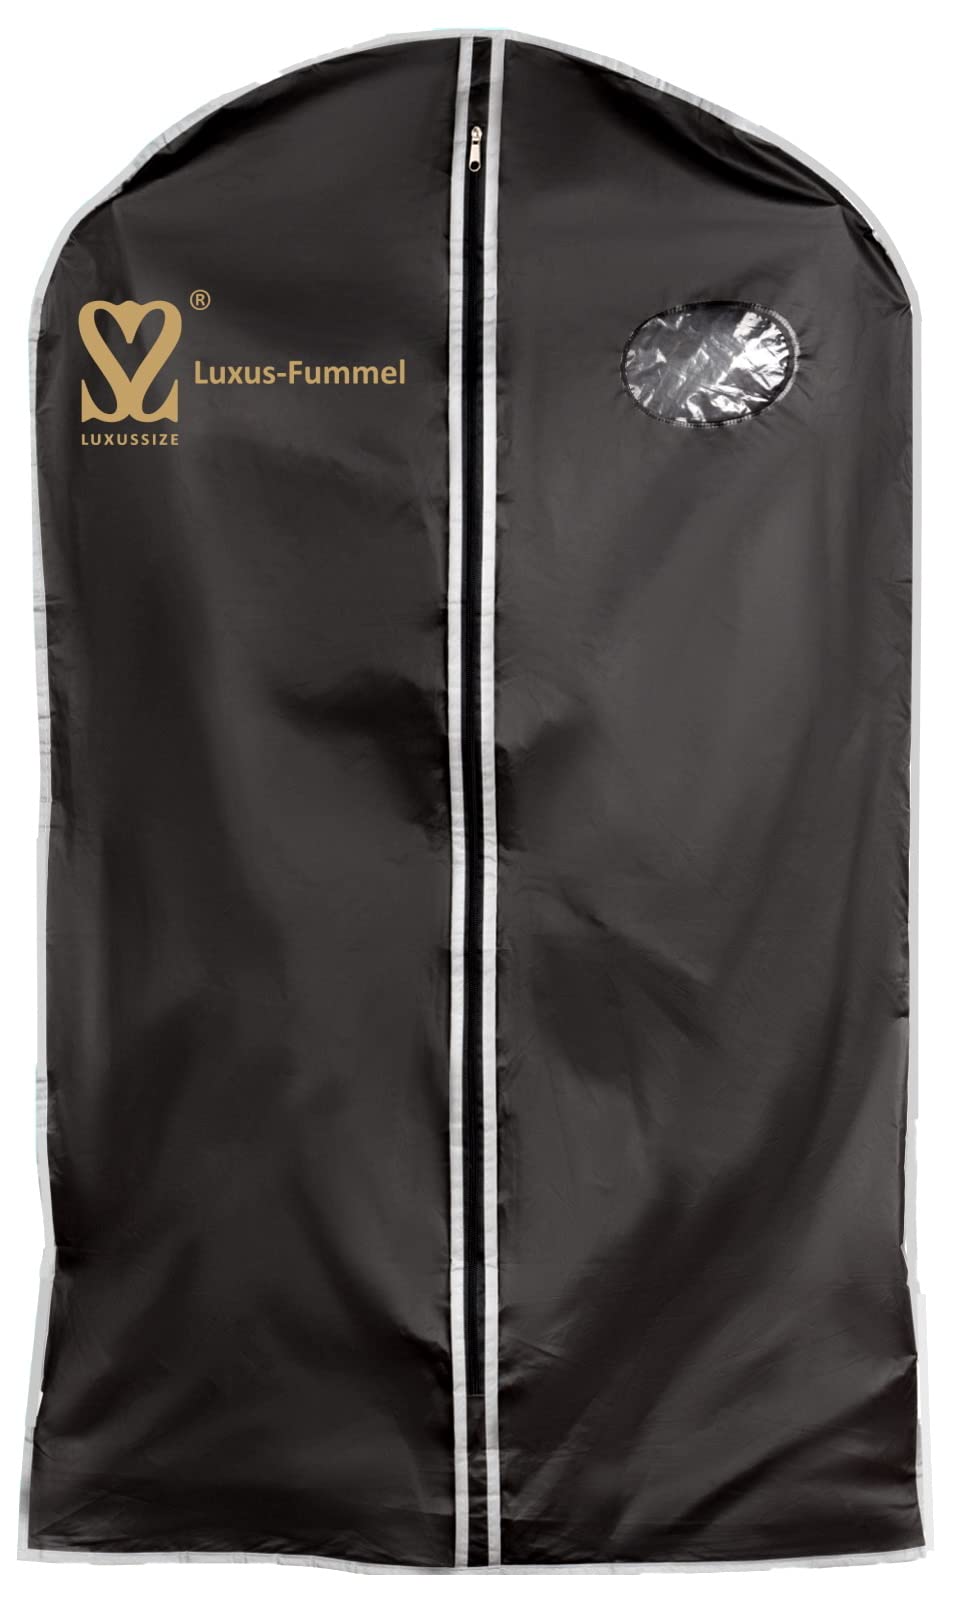 Luxussize - Kleidersack Kleiderhülle Gold-Edition - LUXUS-FUMMEL - 100cm x 58 cm…